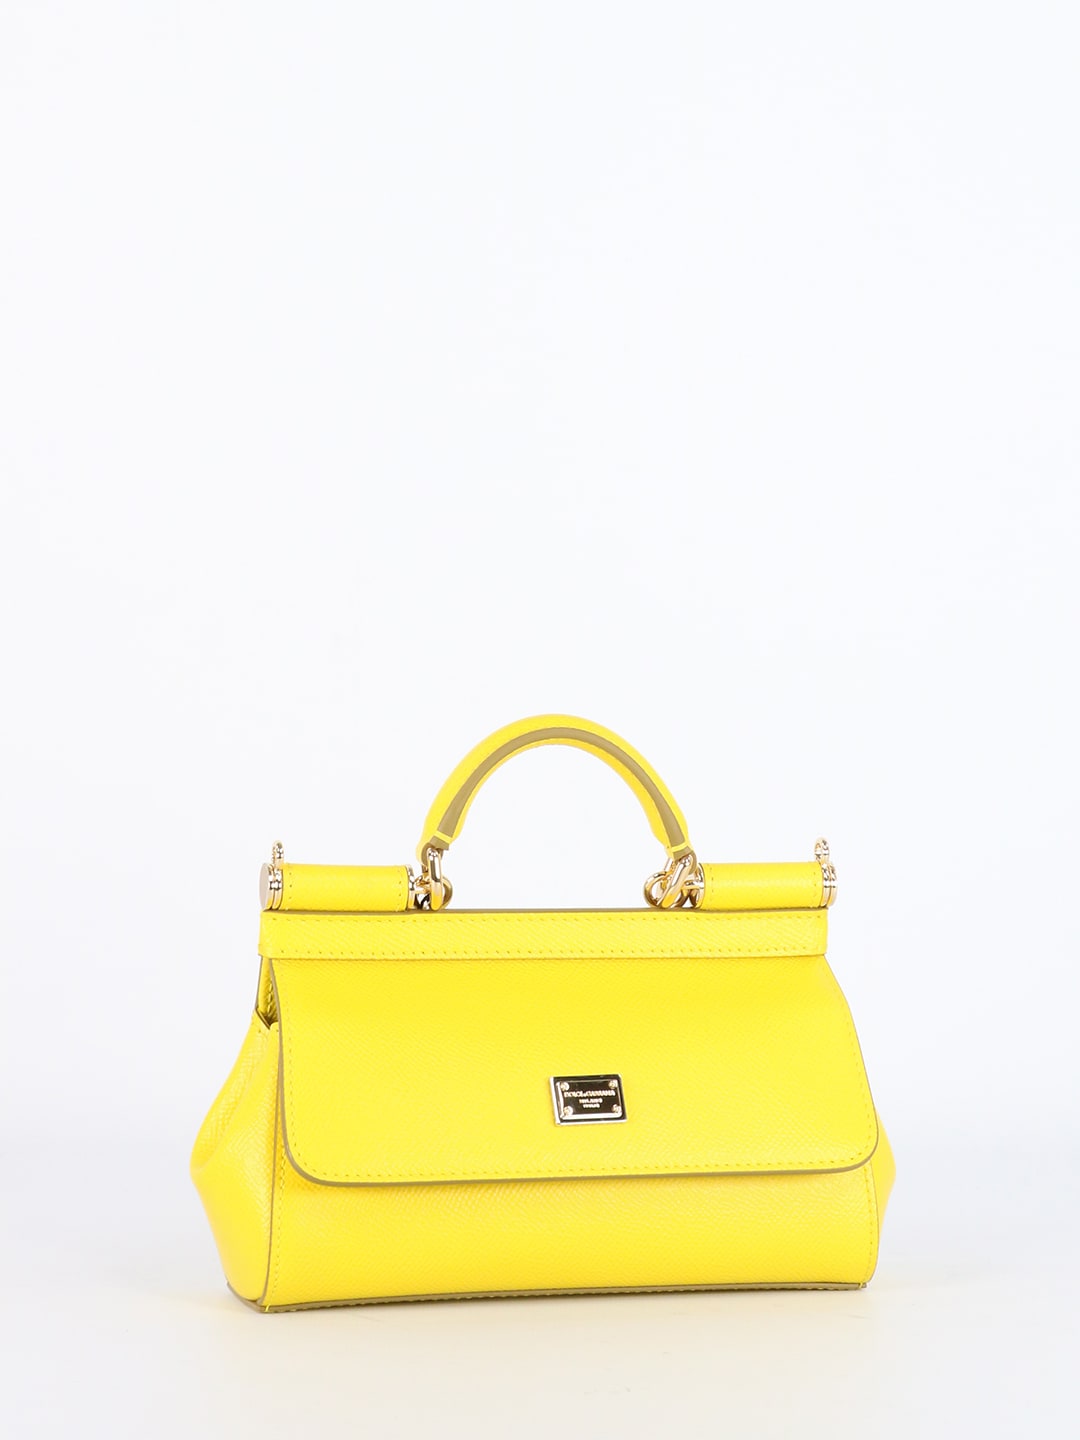 Dolce & Gabbana Sicily Mini Yellow Bag